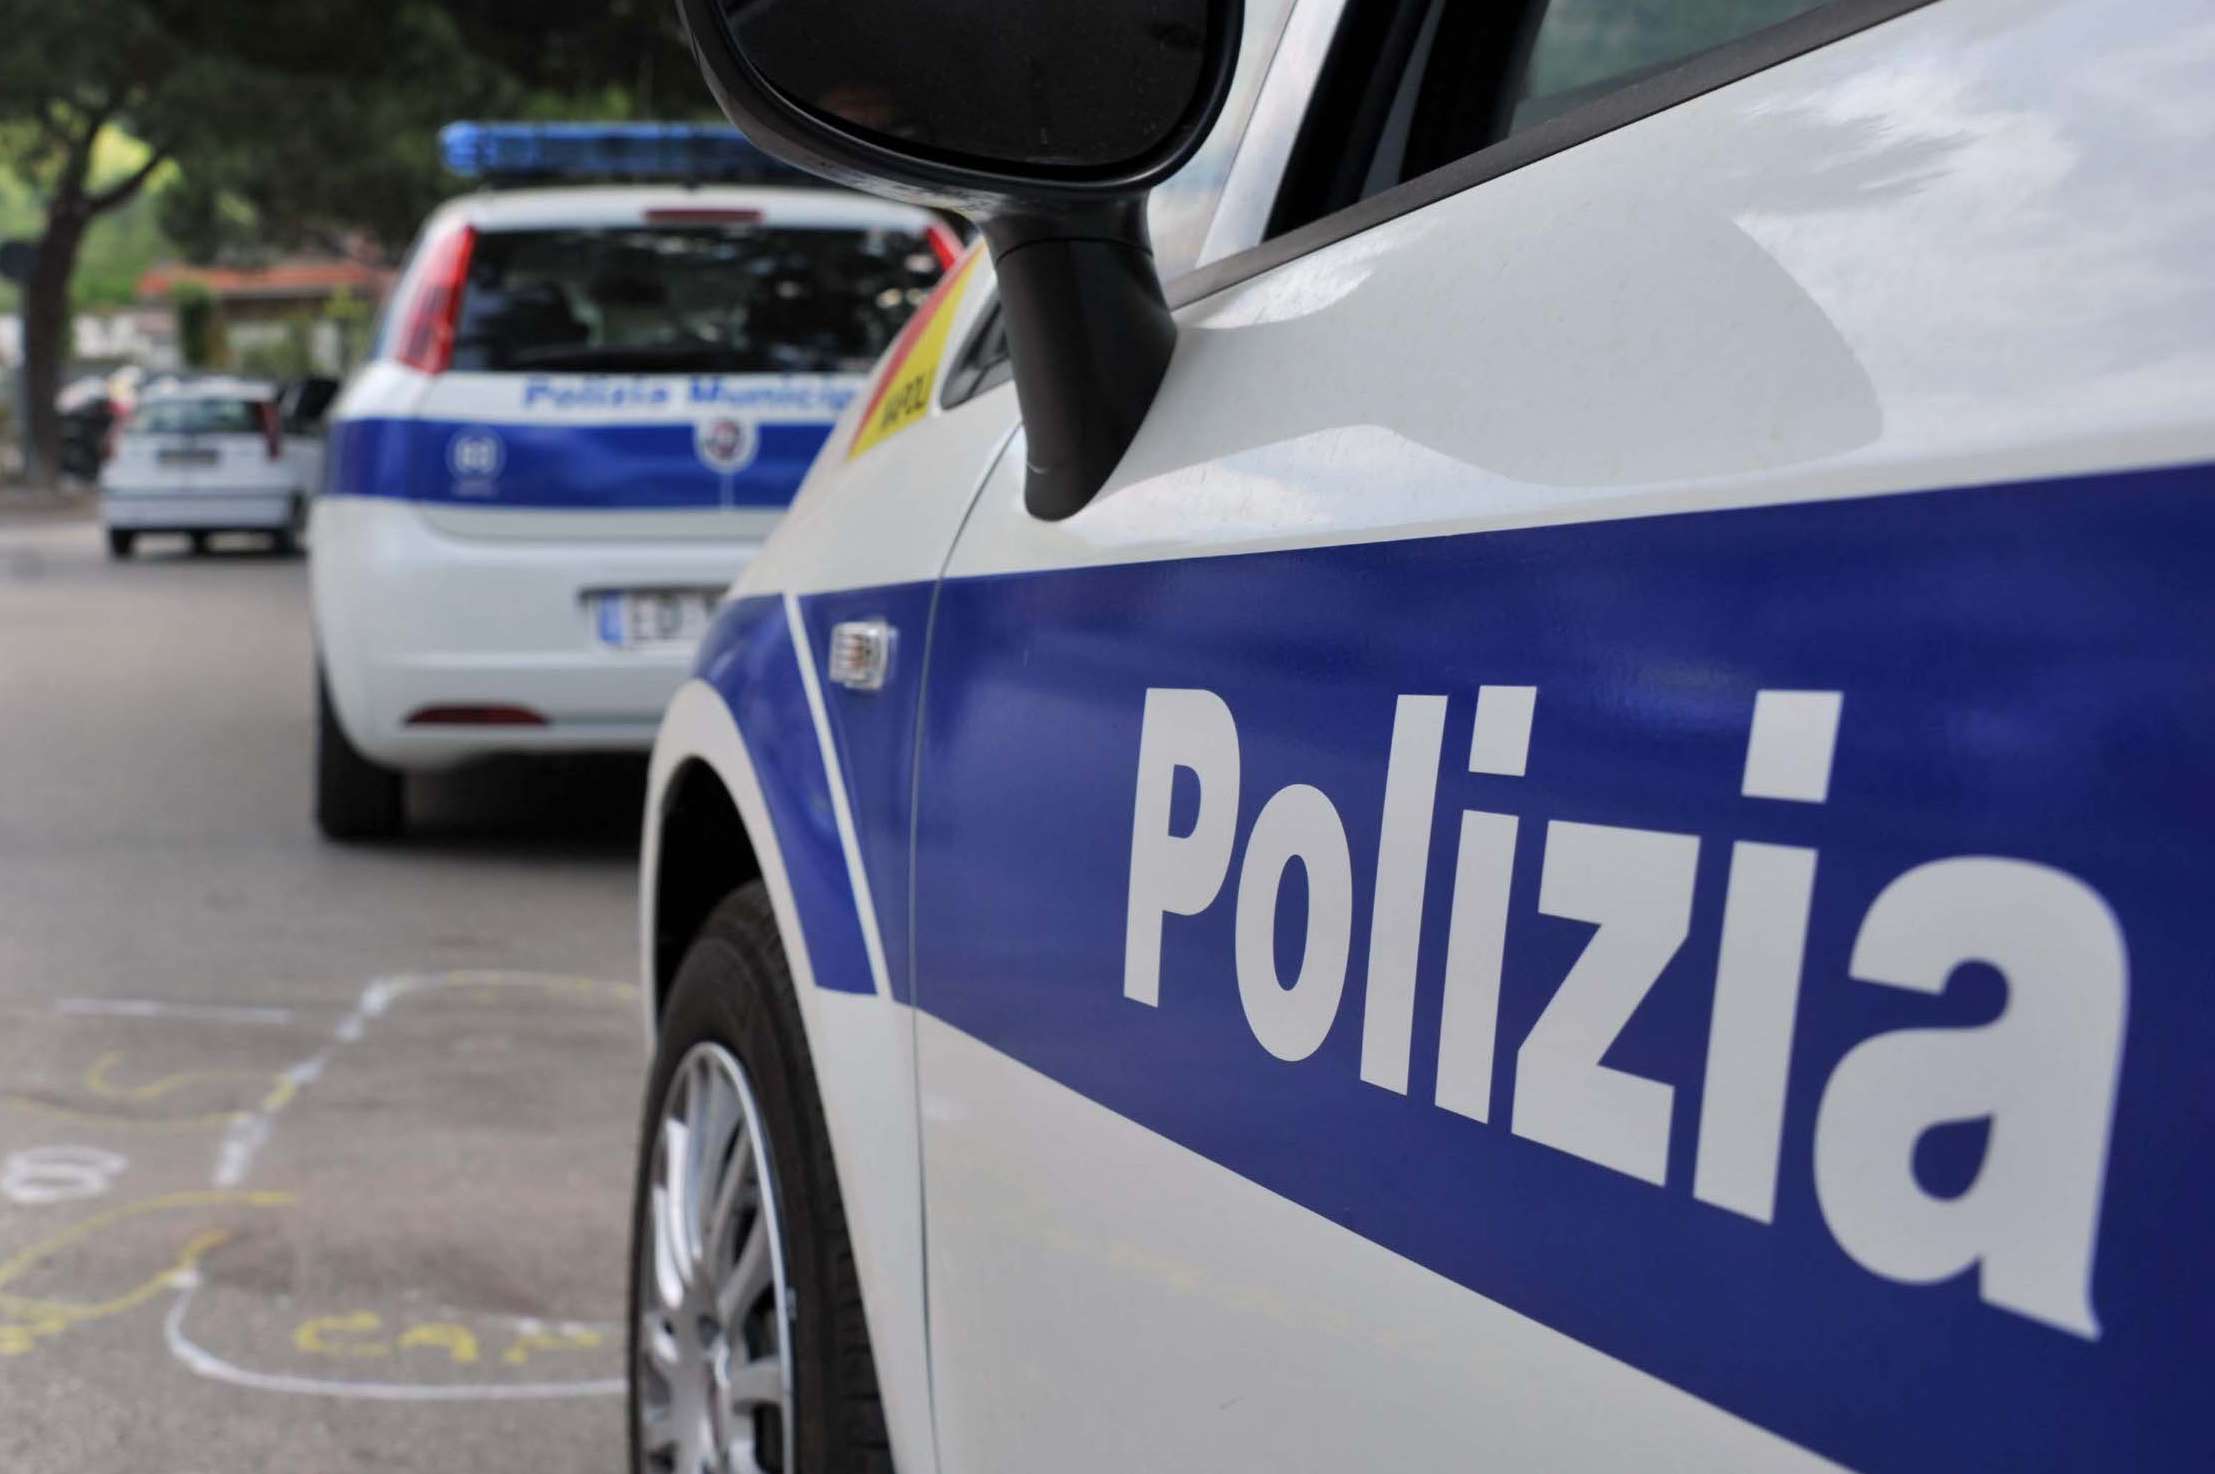 Polizia municipale di Agropoli, fuori Cauceglia. Sindacati: «Scelte politiche non rispondenti a bisogni del territorio»